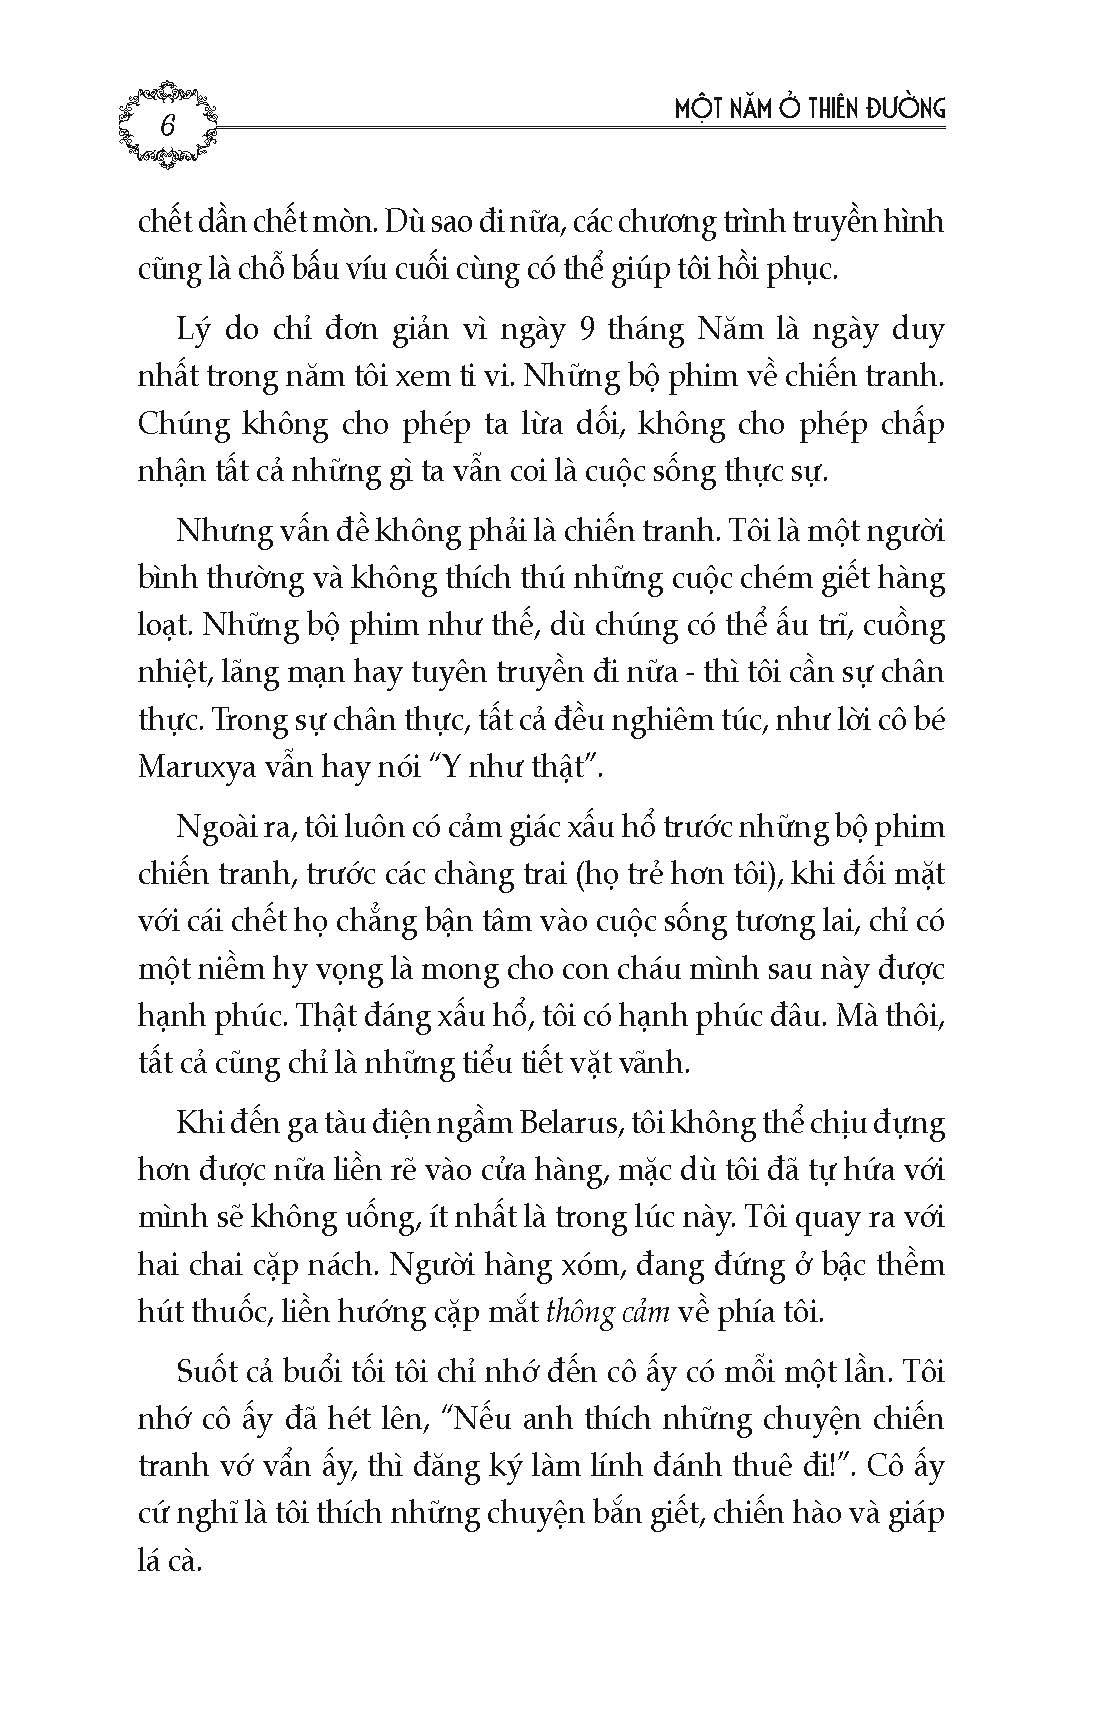 Một Năm Ở Thiên Đường - Tuyển tập truyện ngắn đương đại Nga - Nhiều tác giả; Phan Bạch Châu, Đào Minh Hiệp dịch